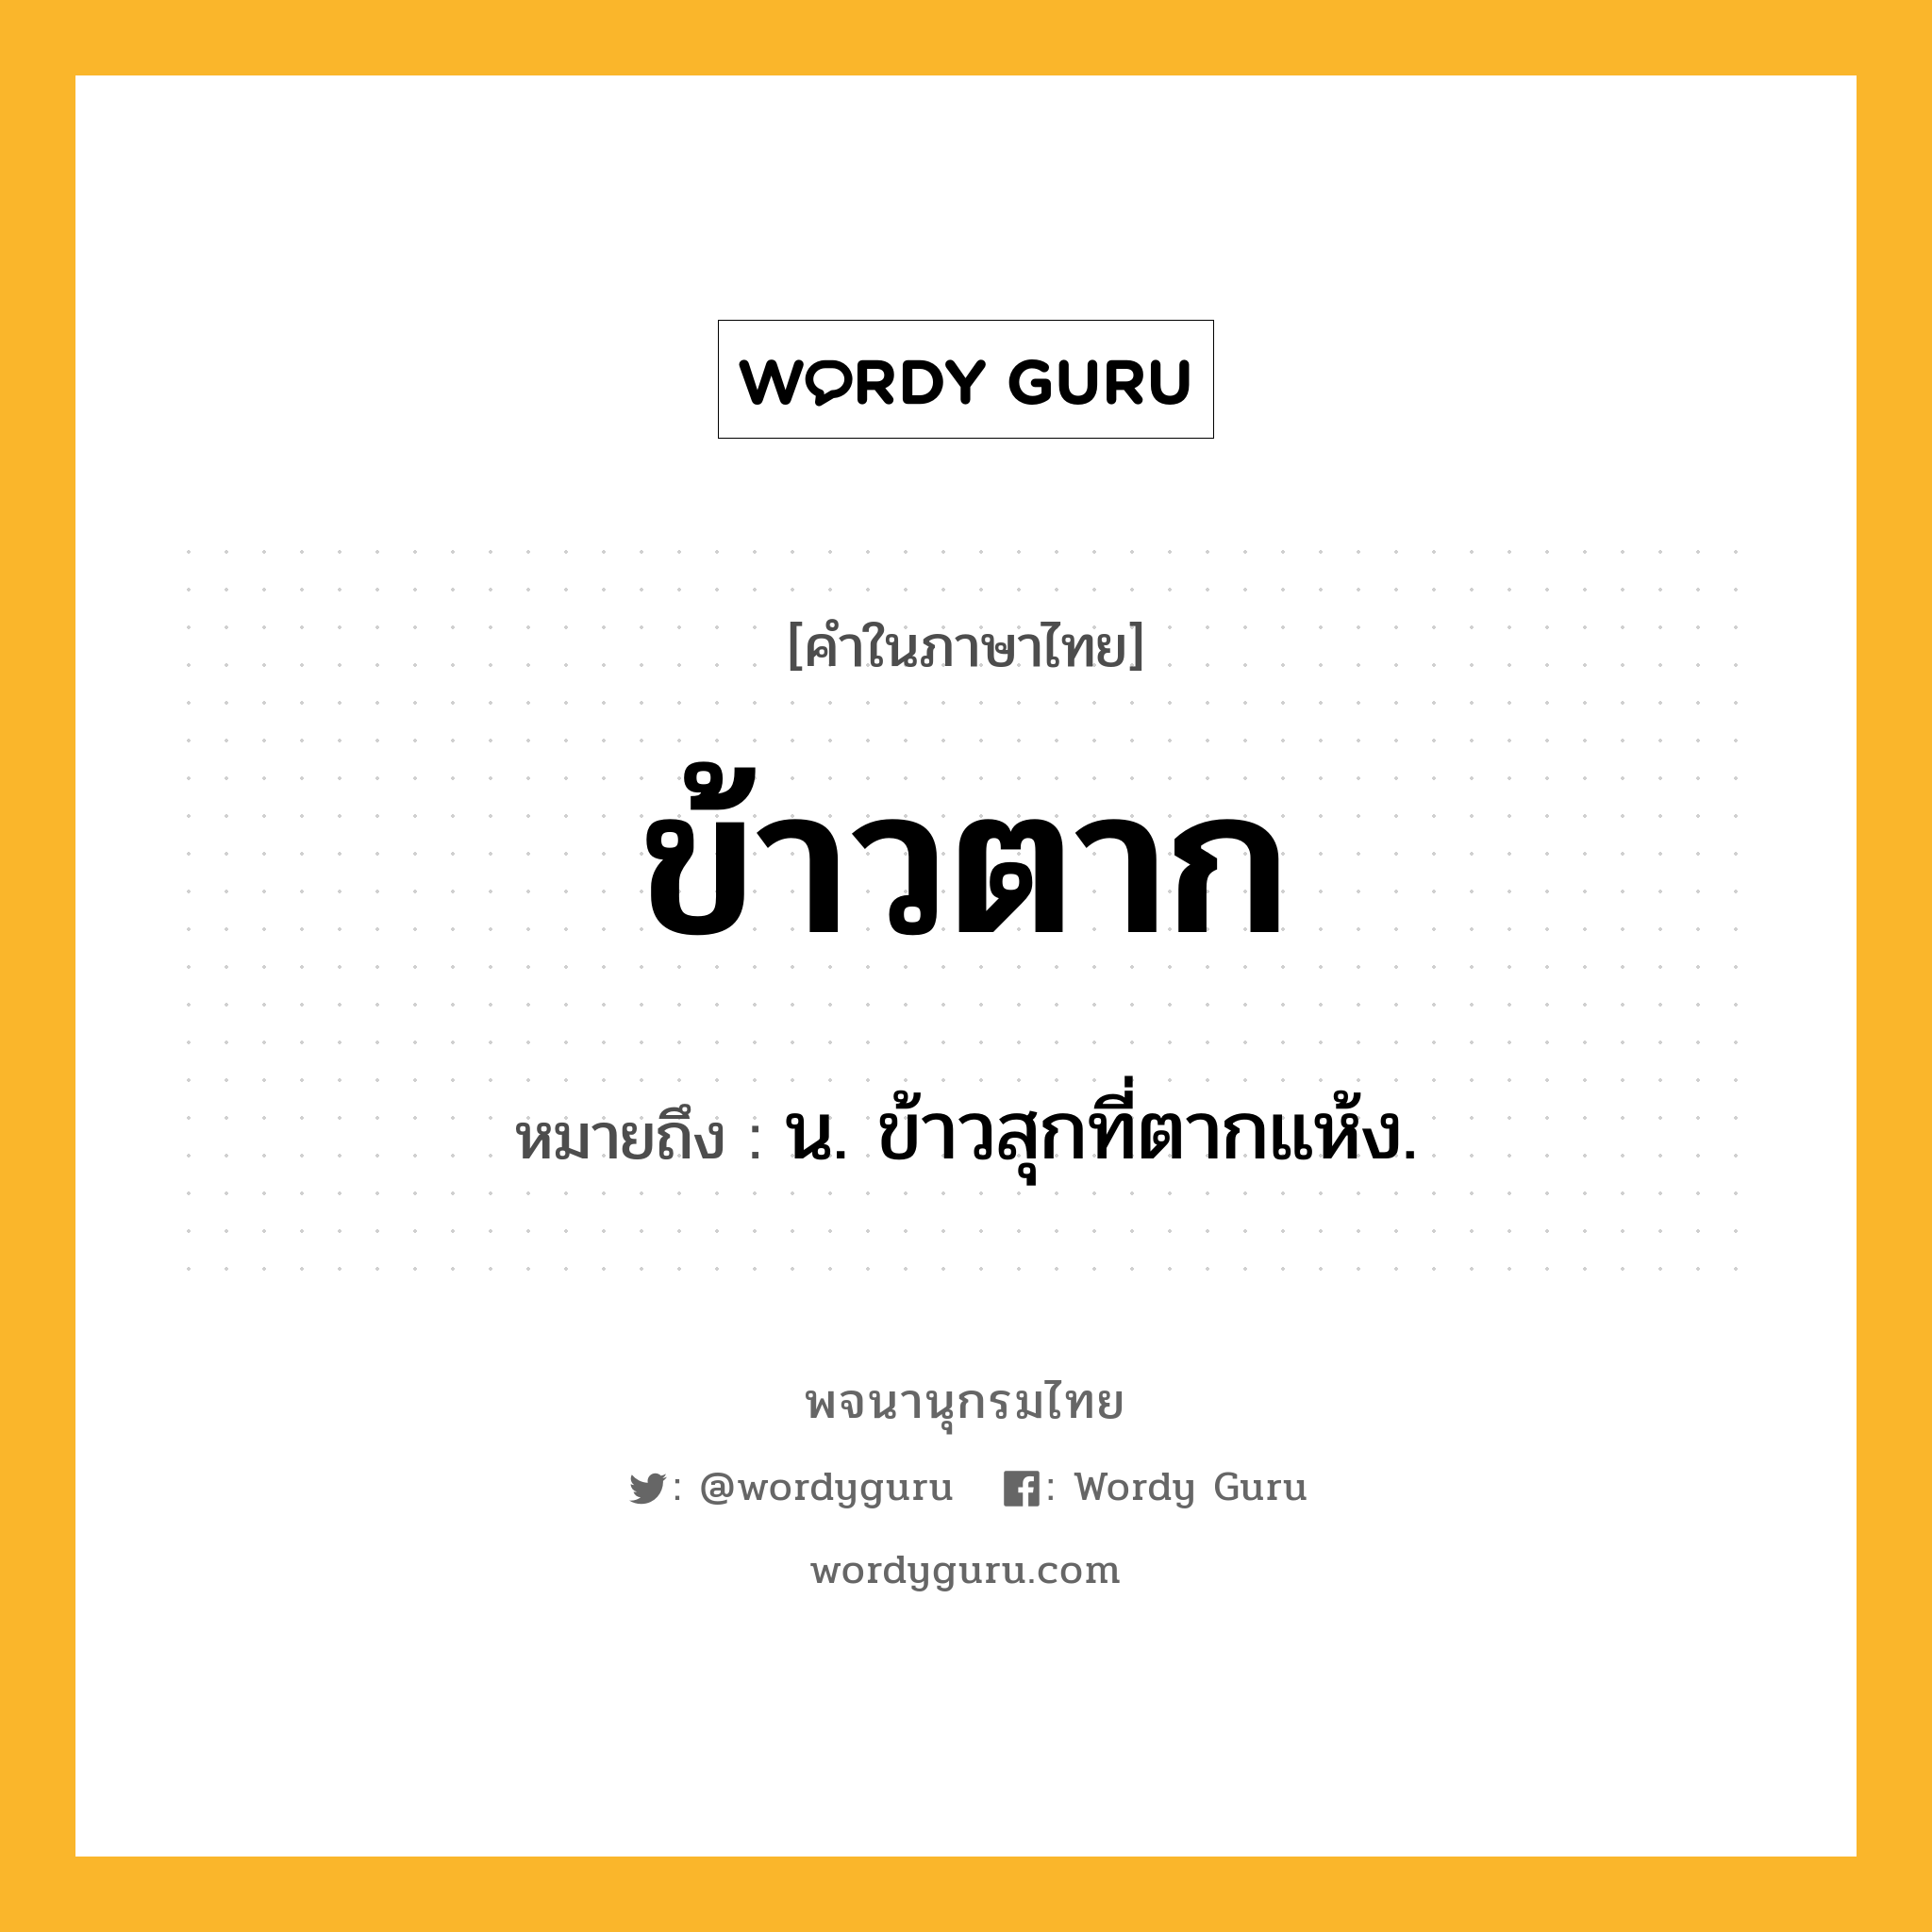 ข้าวตาก ความหมาย หมายถึงอะไร?, คำในภาษาไทย ข้าวตาก หมายถึง น. ข้าวสุกที่ตากแห้ง.